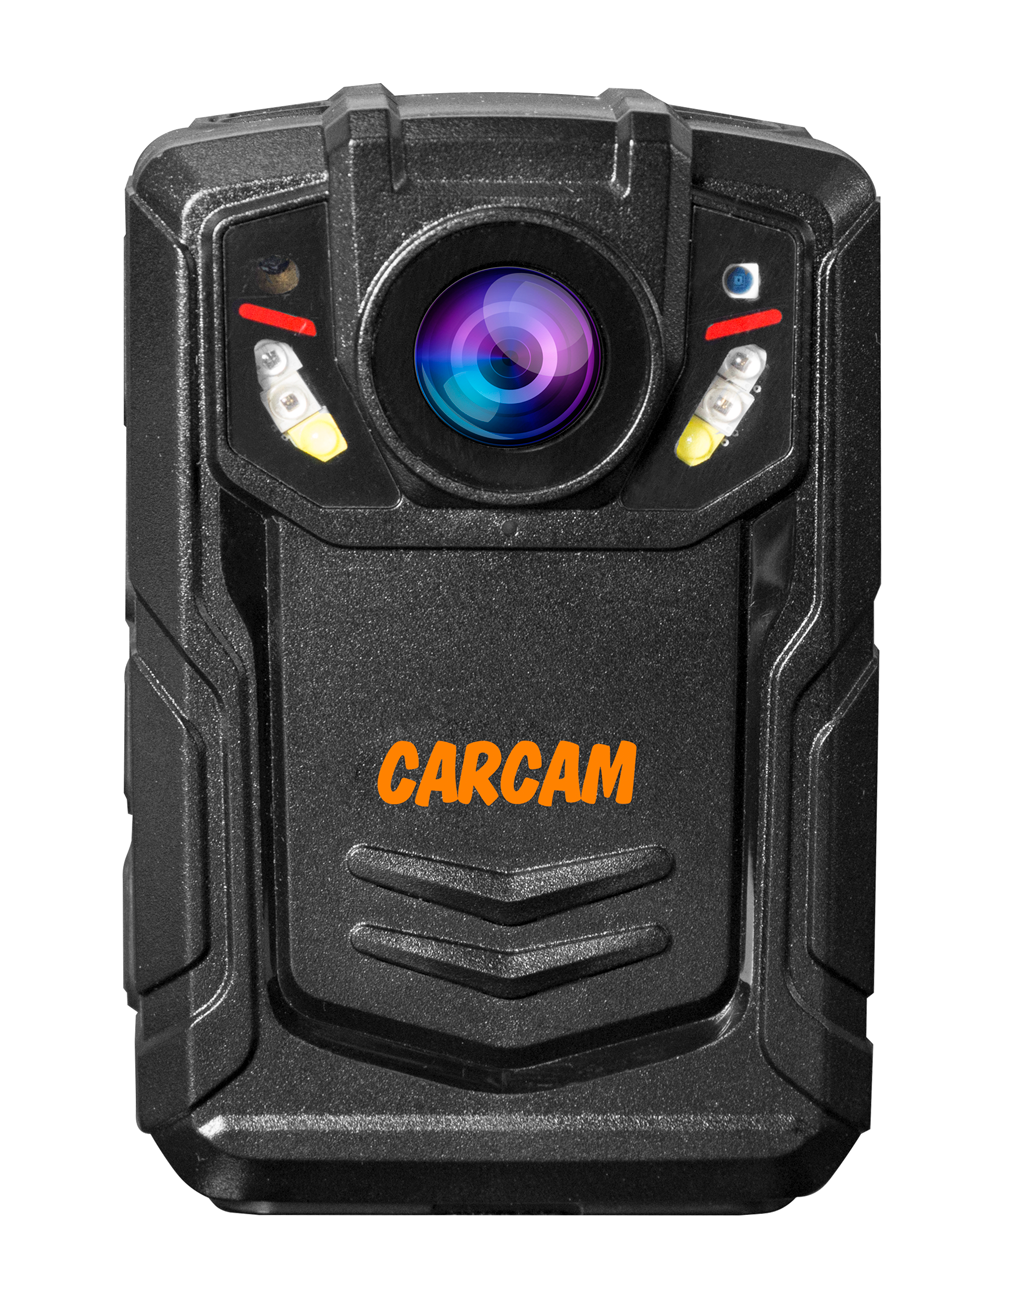 Персональный Quad HD видеорегистратор  CARCAM COMBAT 2S/4G 128GB персональный видеорегистратор carcam combat 2s pro 256gb